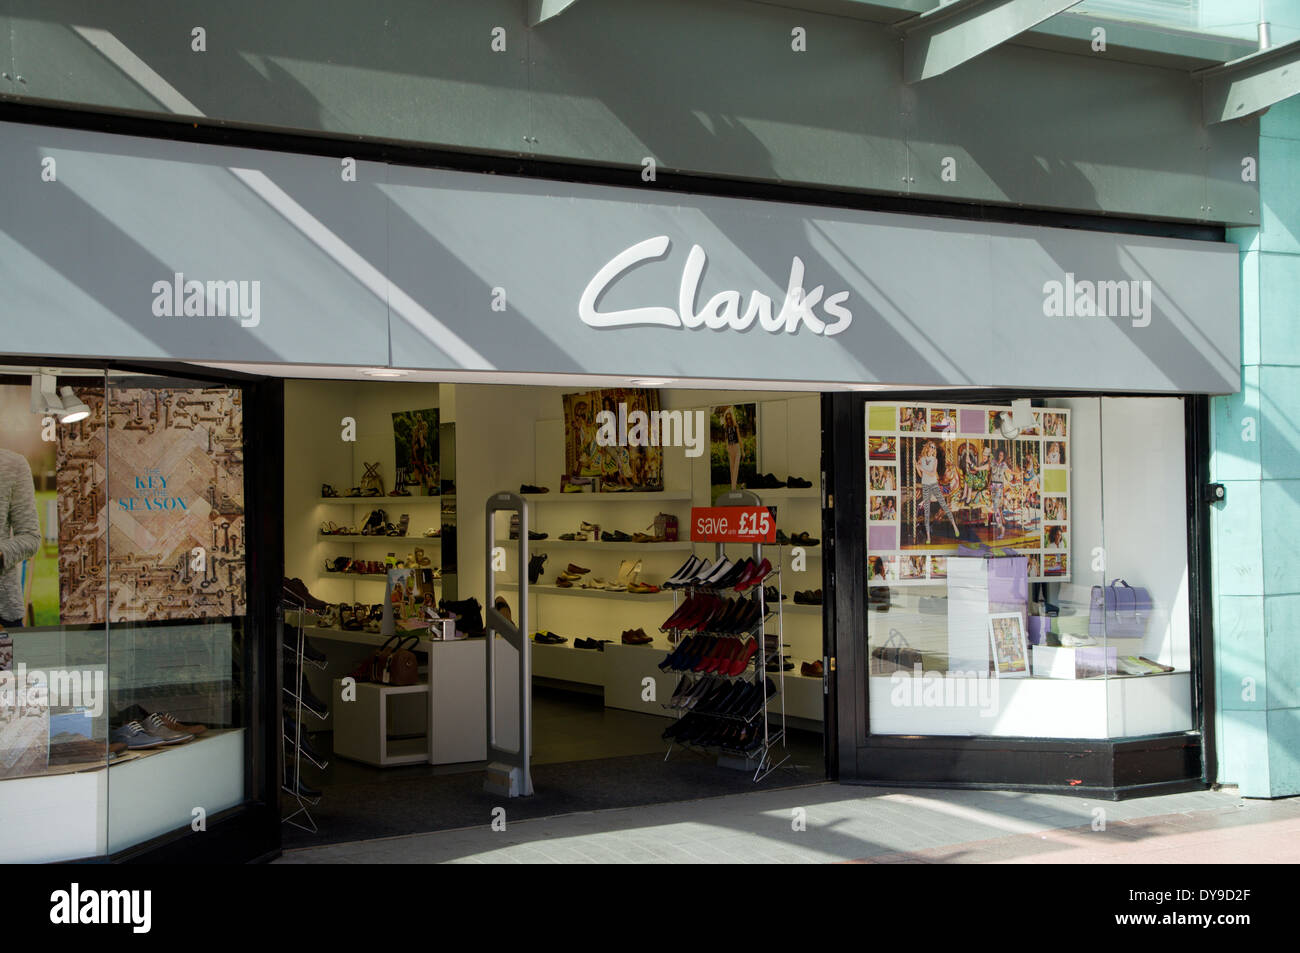 Magasin de chaussures Clarks, Cardiff, Pays de Galles. Banque D'Images